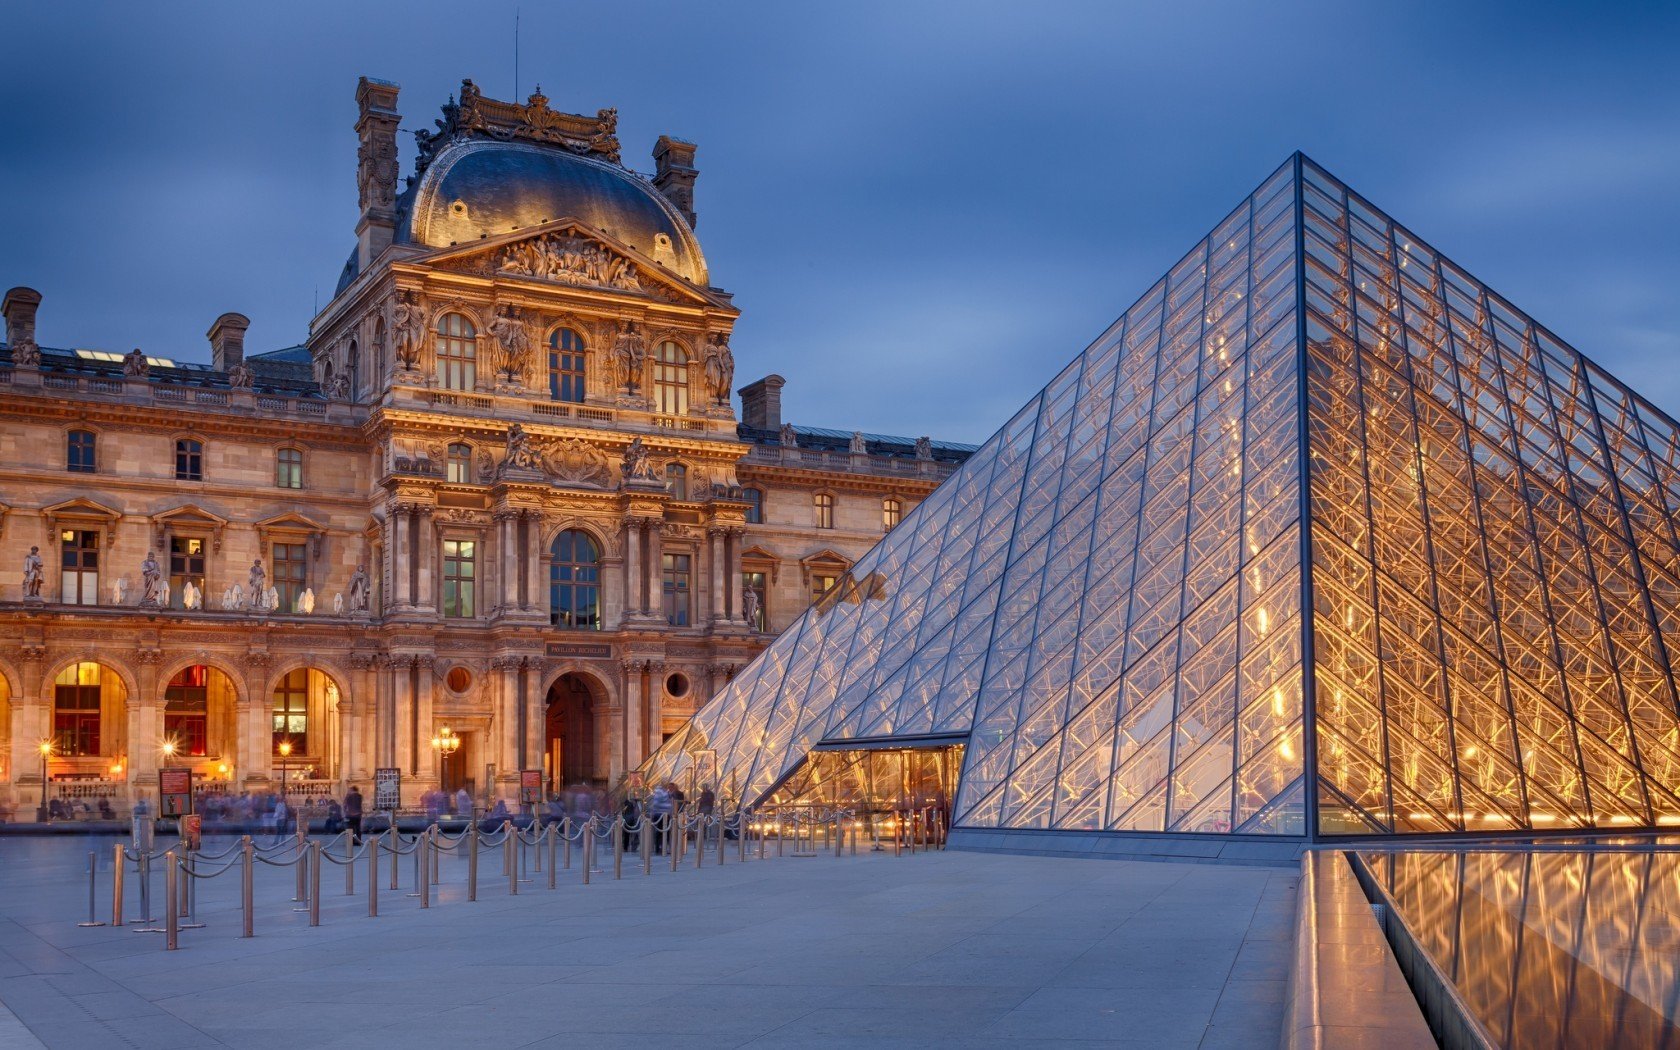 Louvre Palace Paris France